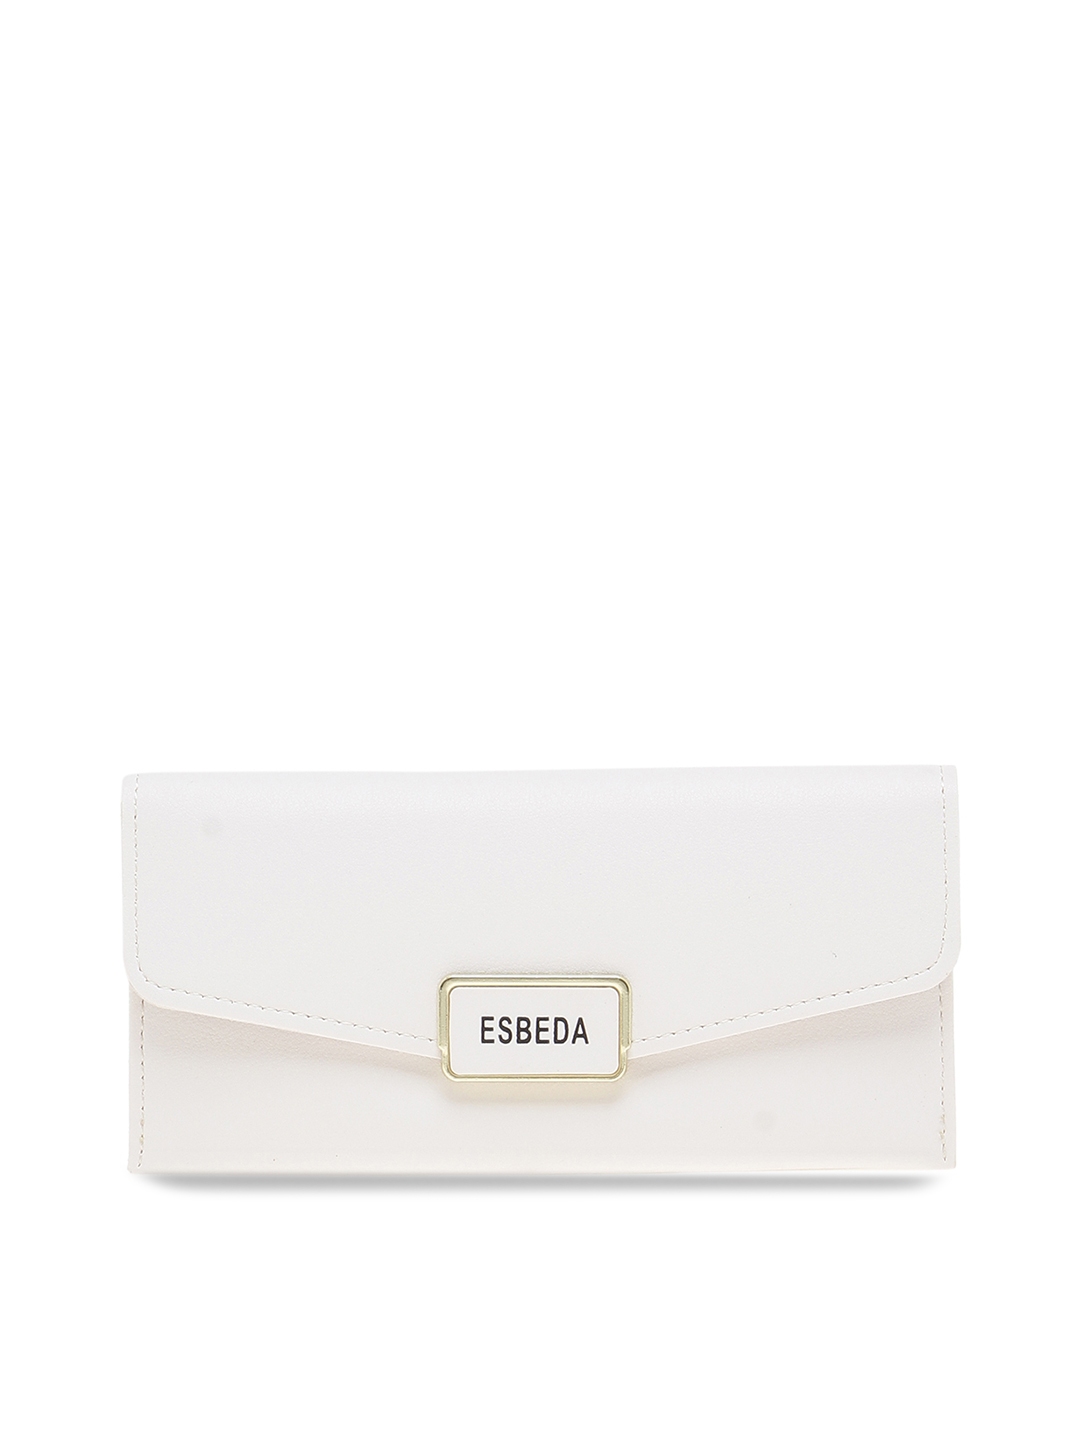 ESBEDA Black Color White Checks Pattern Wallet for Women: Buy